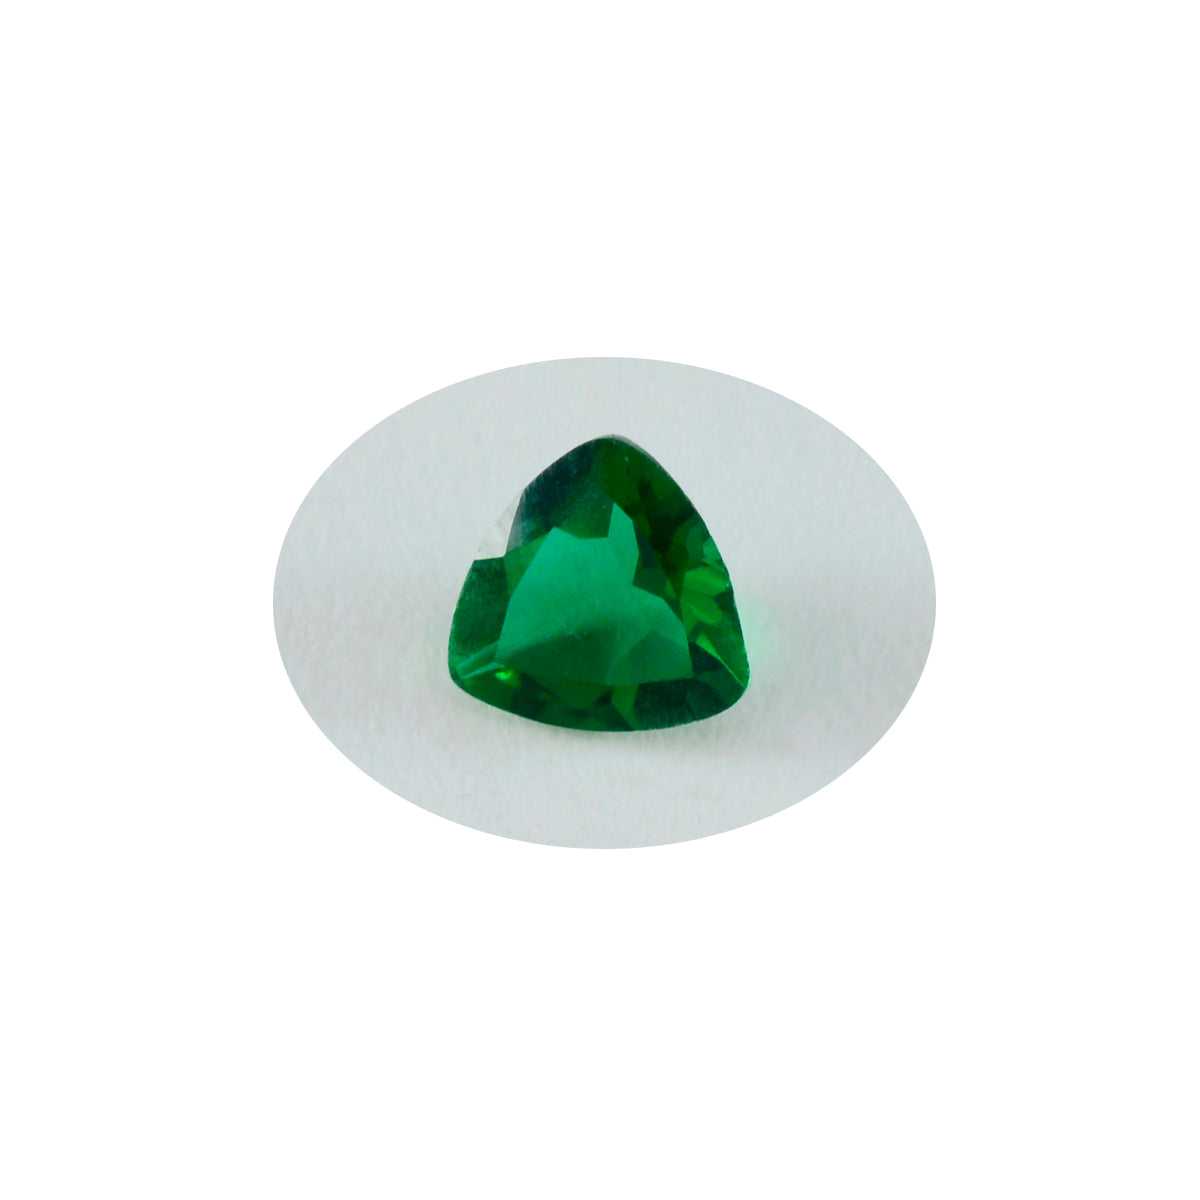 riyogems 1шт зеленый изумруд cz ограненный 15x15 мм форма триллион качество A1 свободный драгоценный камень